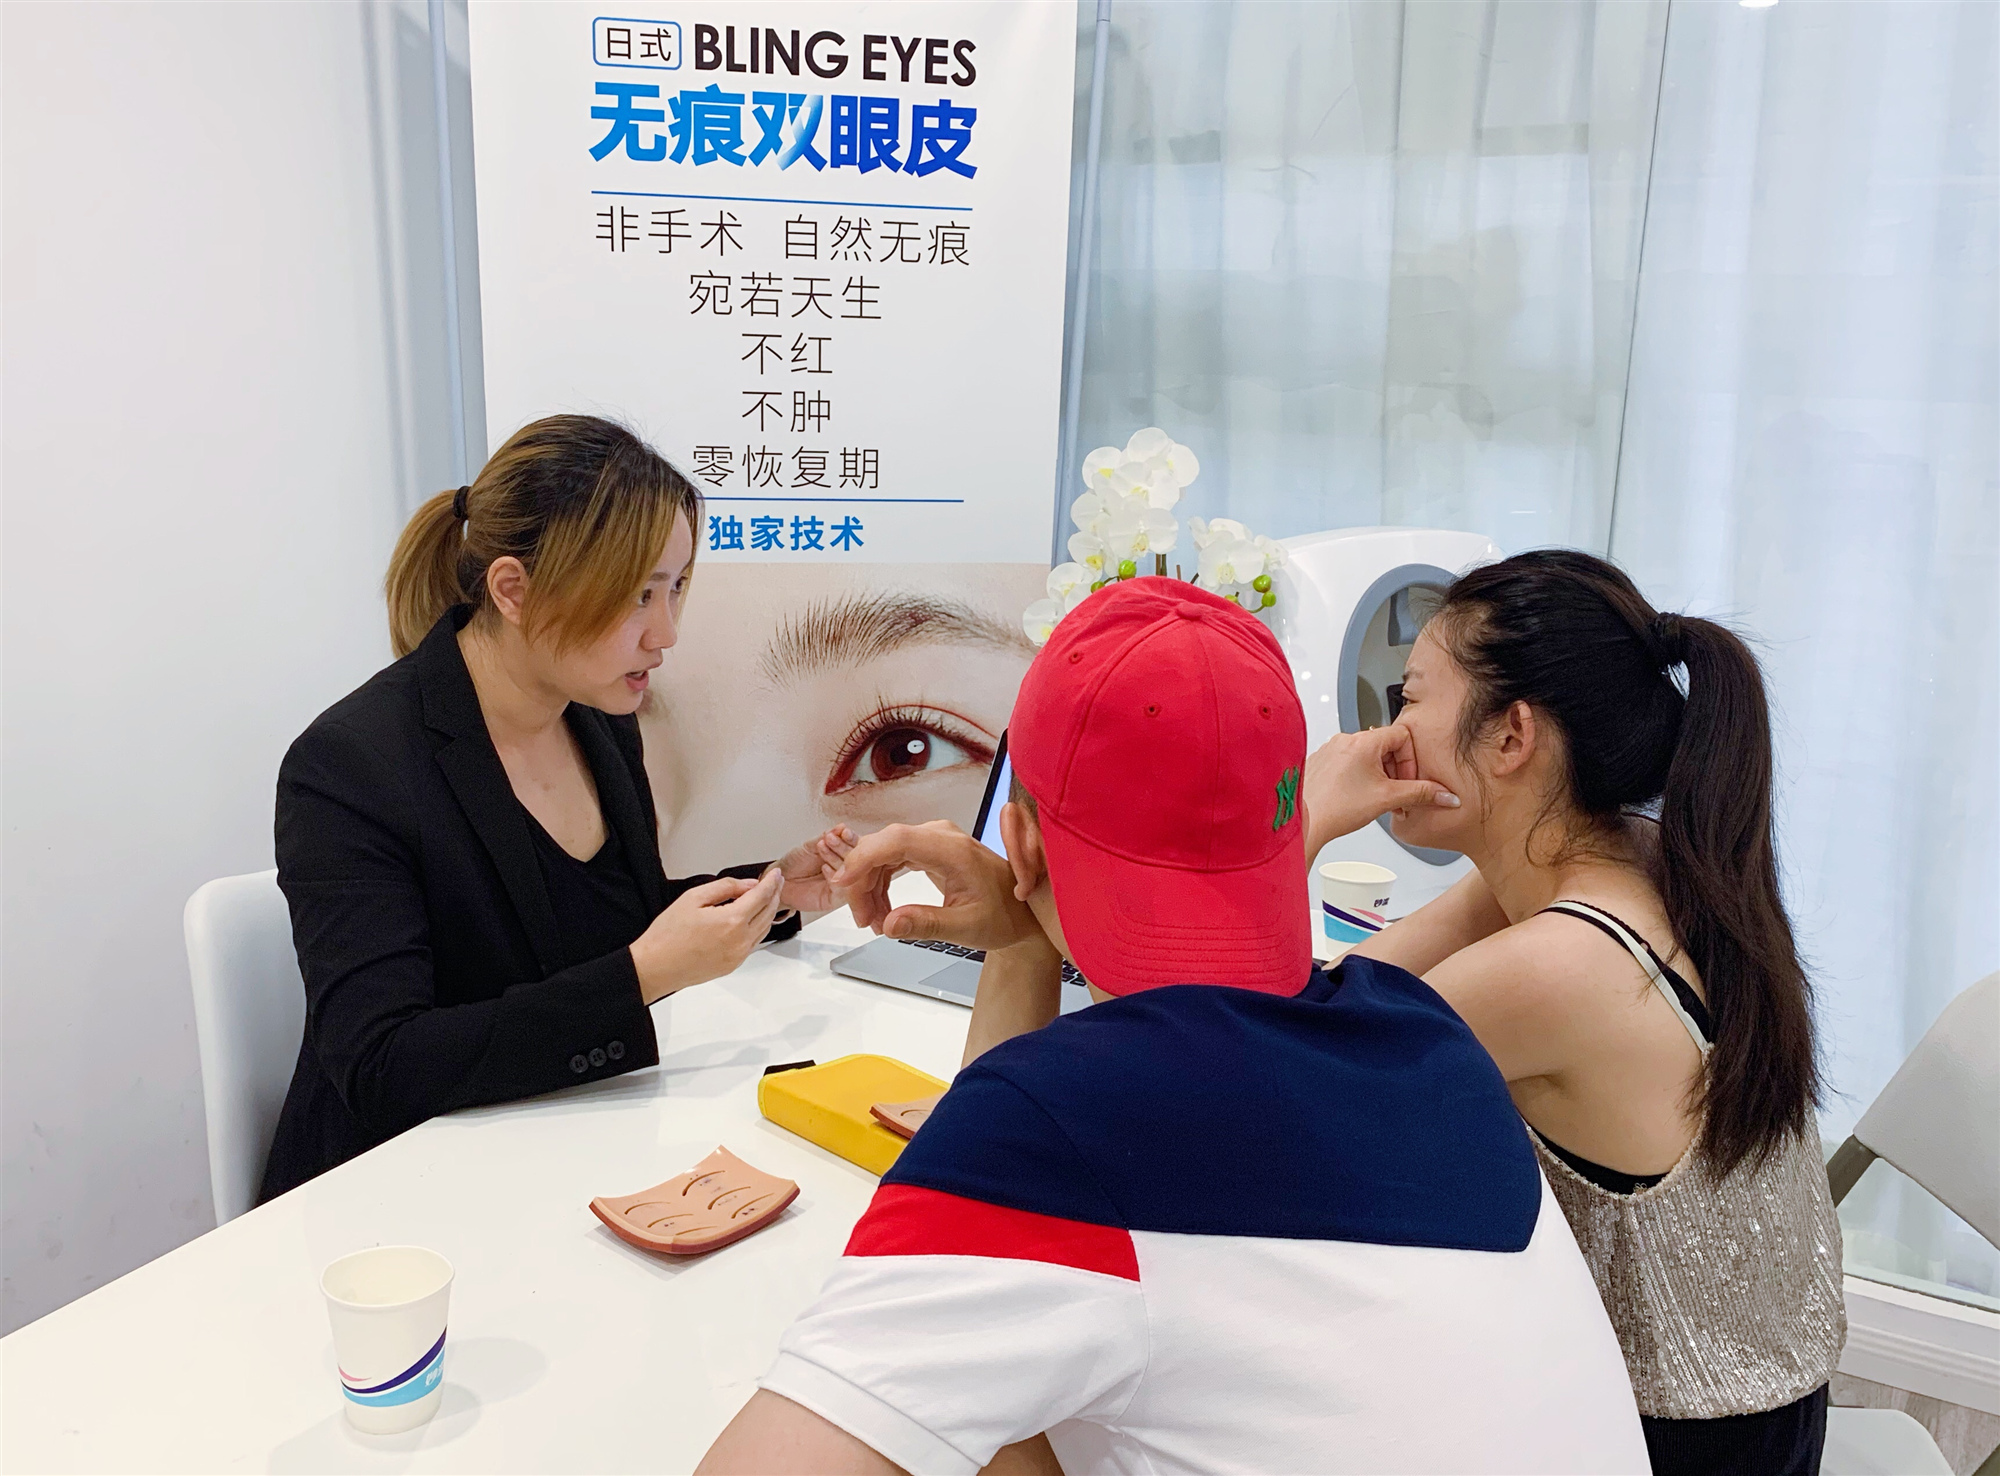 上海BEAUTY SHOW美妆学校-学员了解无痕双眼皮技术